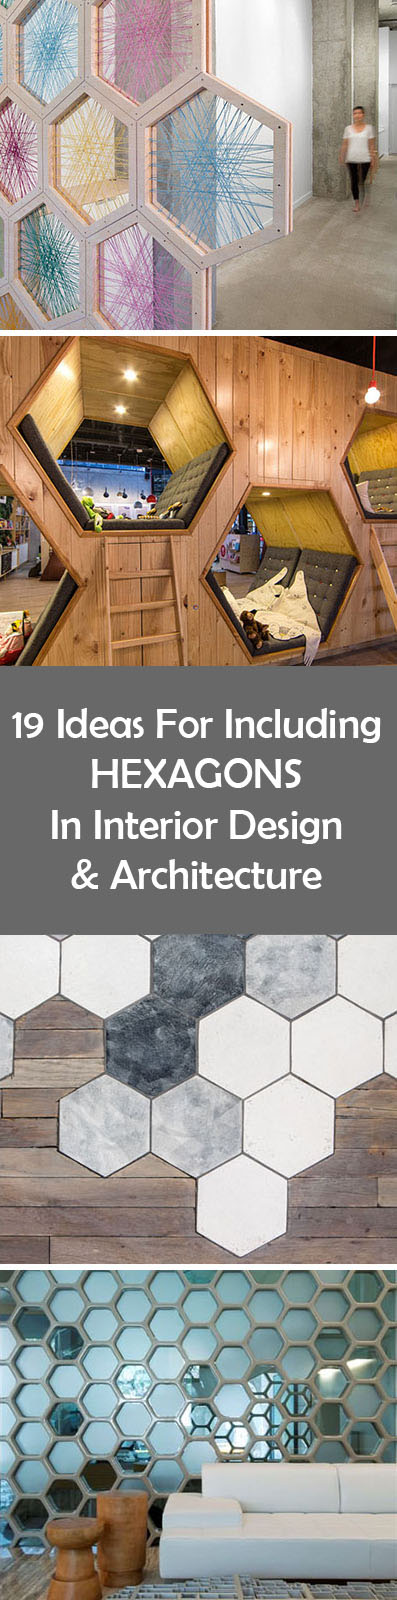 19 идей использования шестиугольников в дизайне интерьера и архитектуре //